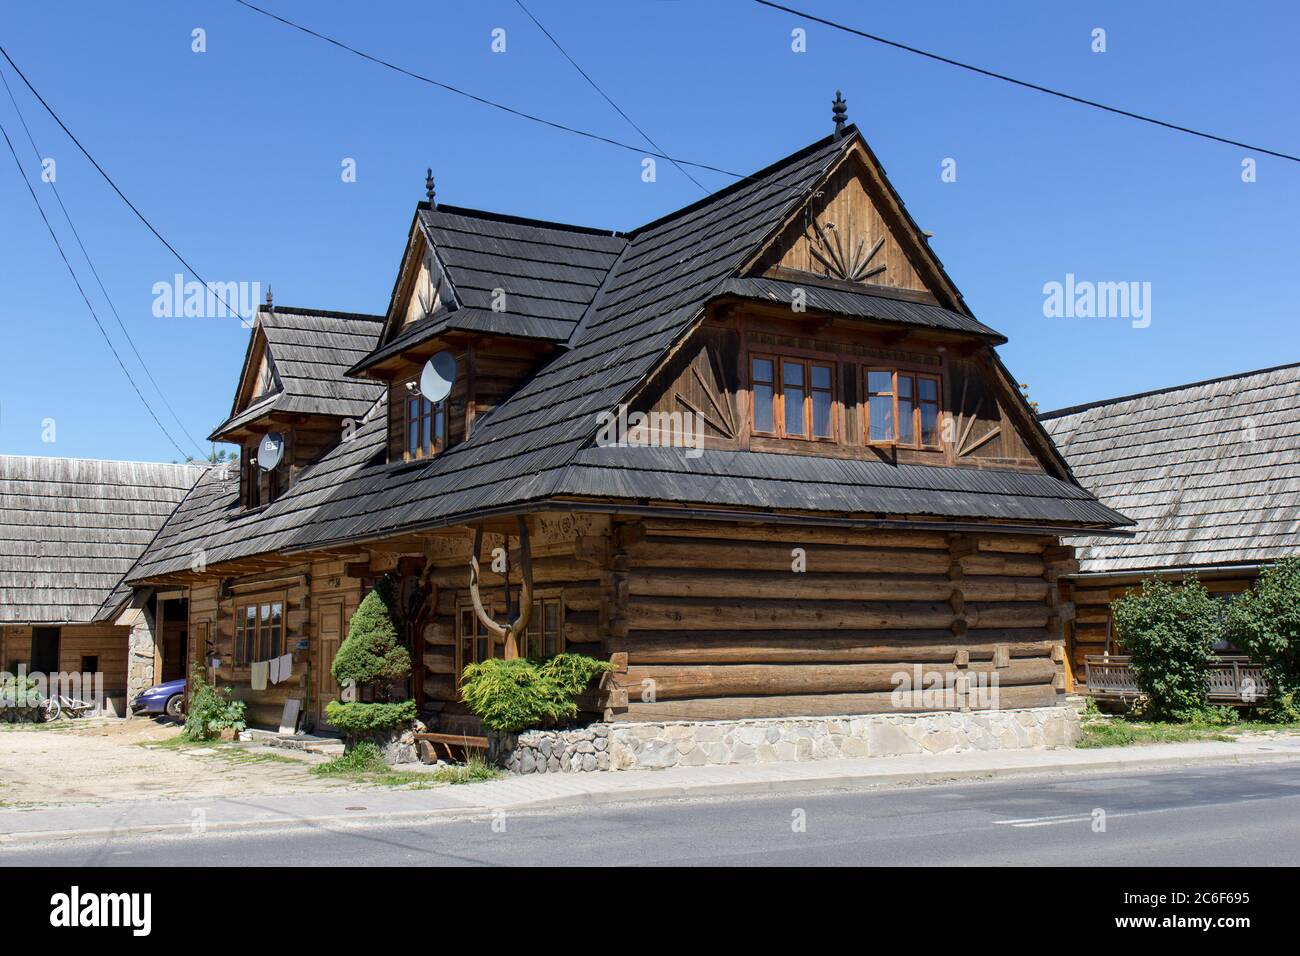 Chocholow, Pologne : 30 juillet 2017 - Maisons traditionnelles en bois du village de Chocholow, région des montagnes Tatra, Pologne, Banque D'Images